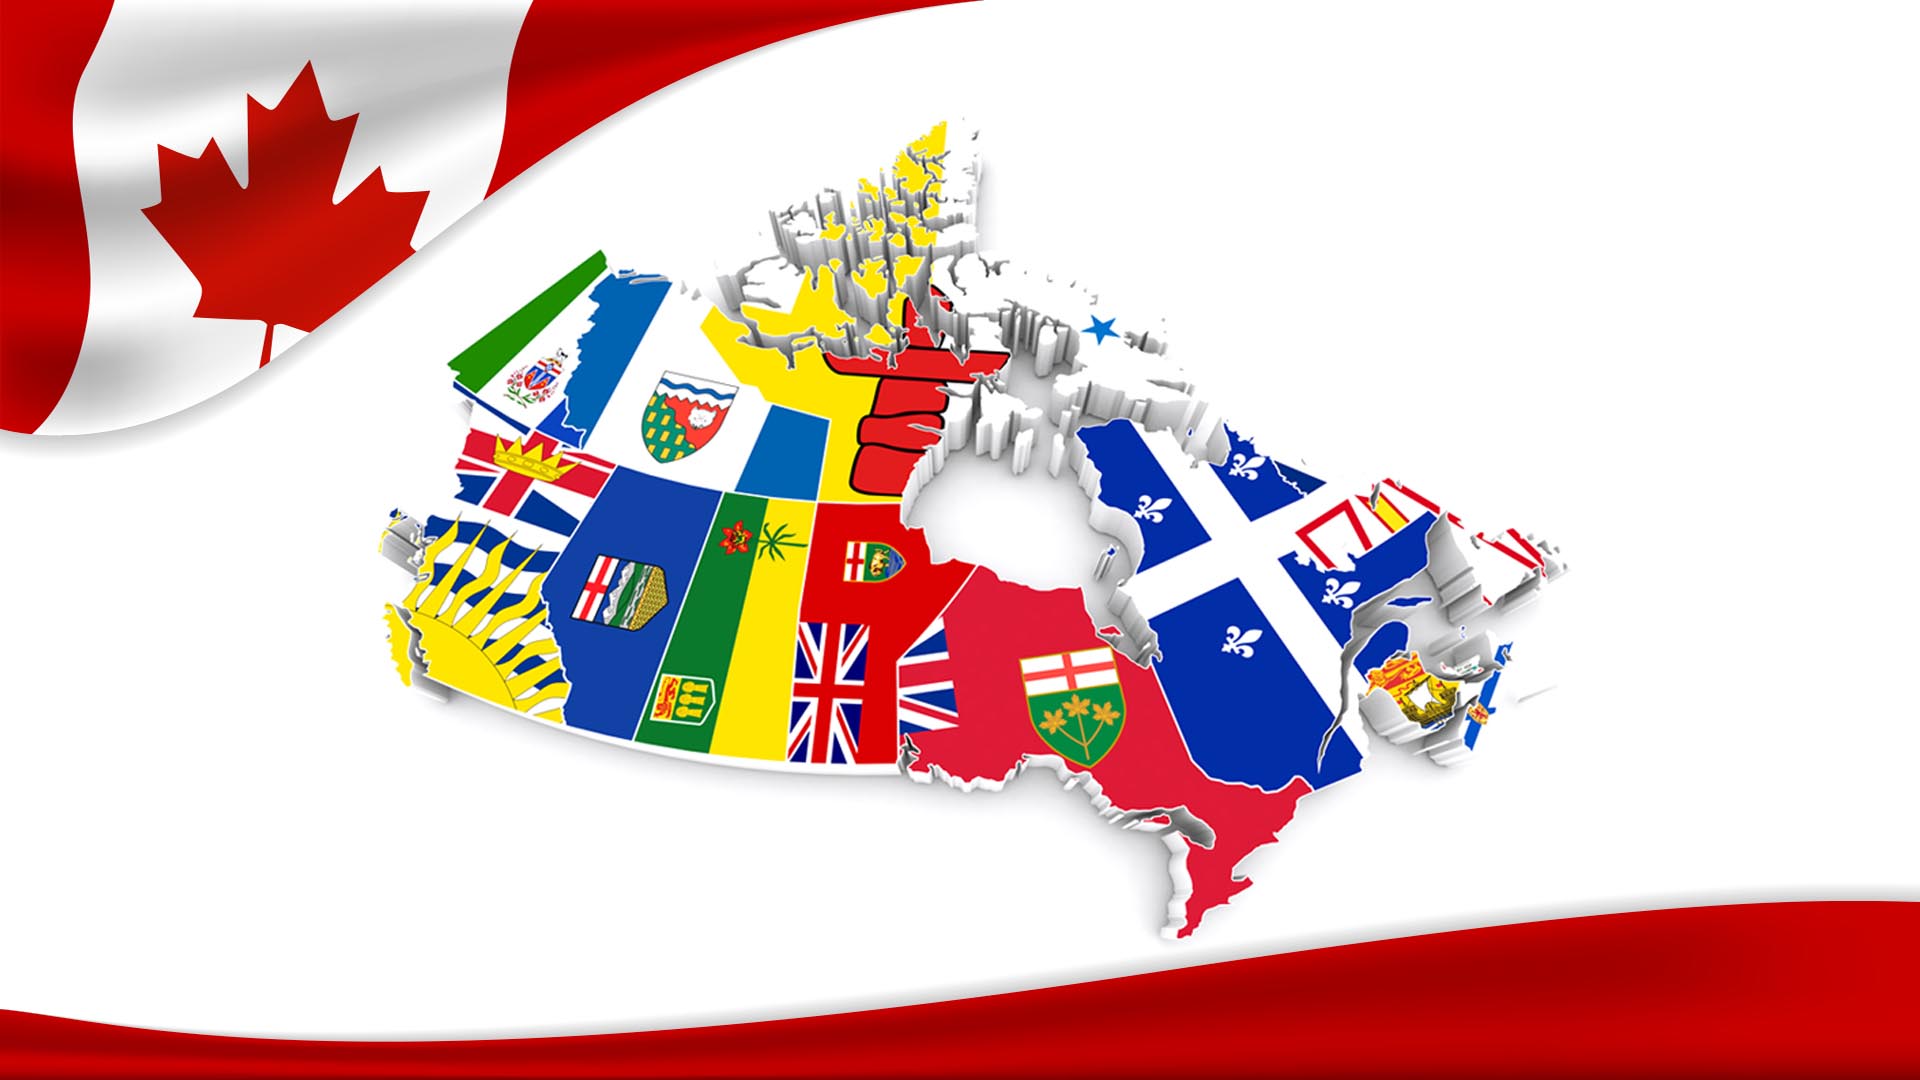 Canada Provincial Nominee Program